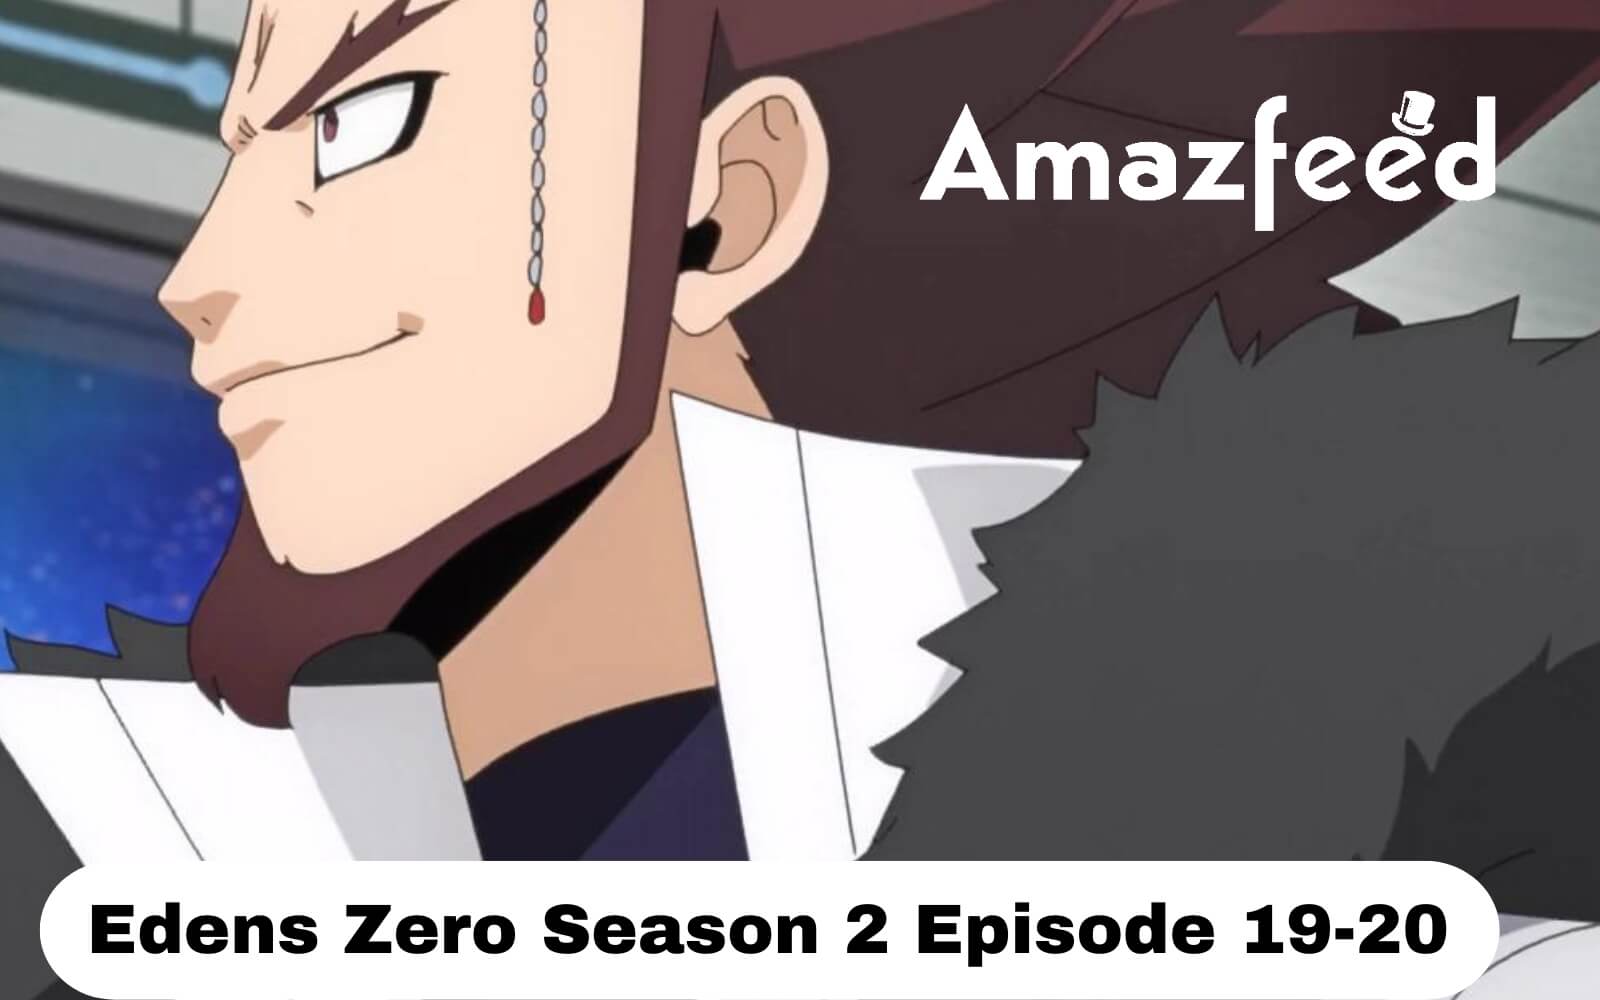 Edens Zero Anime New Promo Video Gives Glimpse Into Season 2